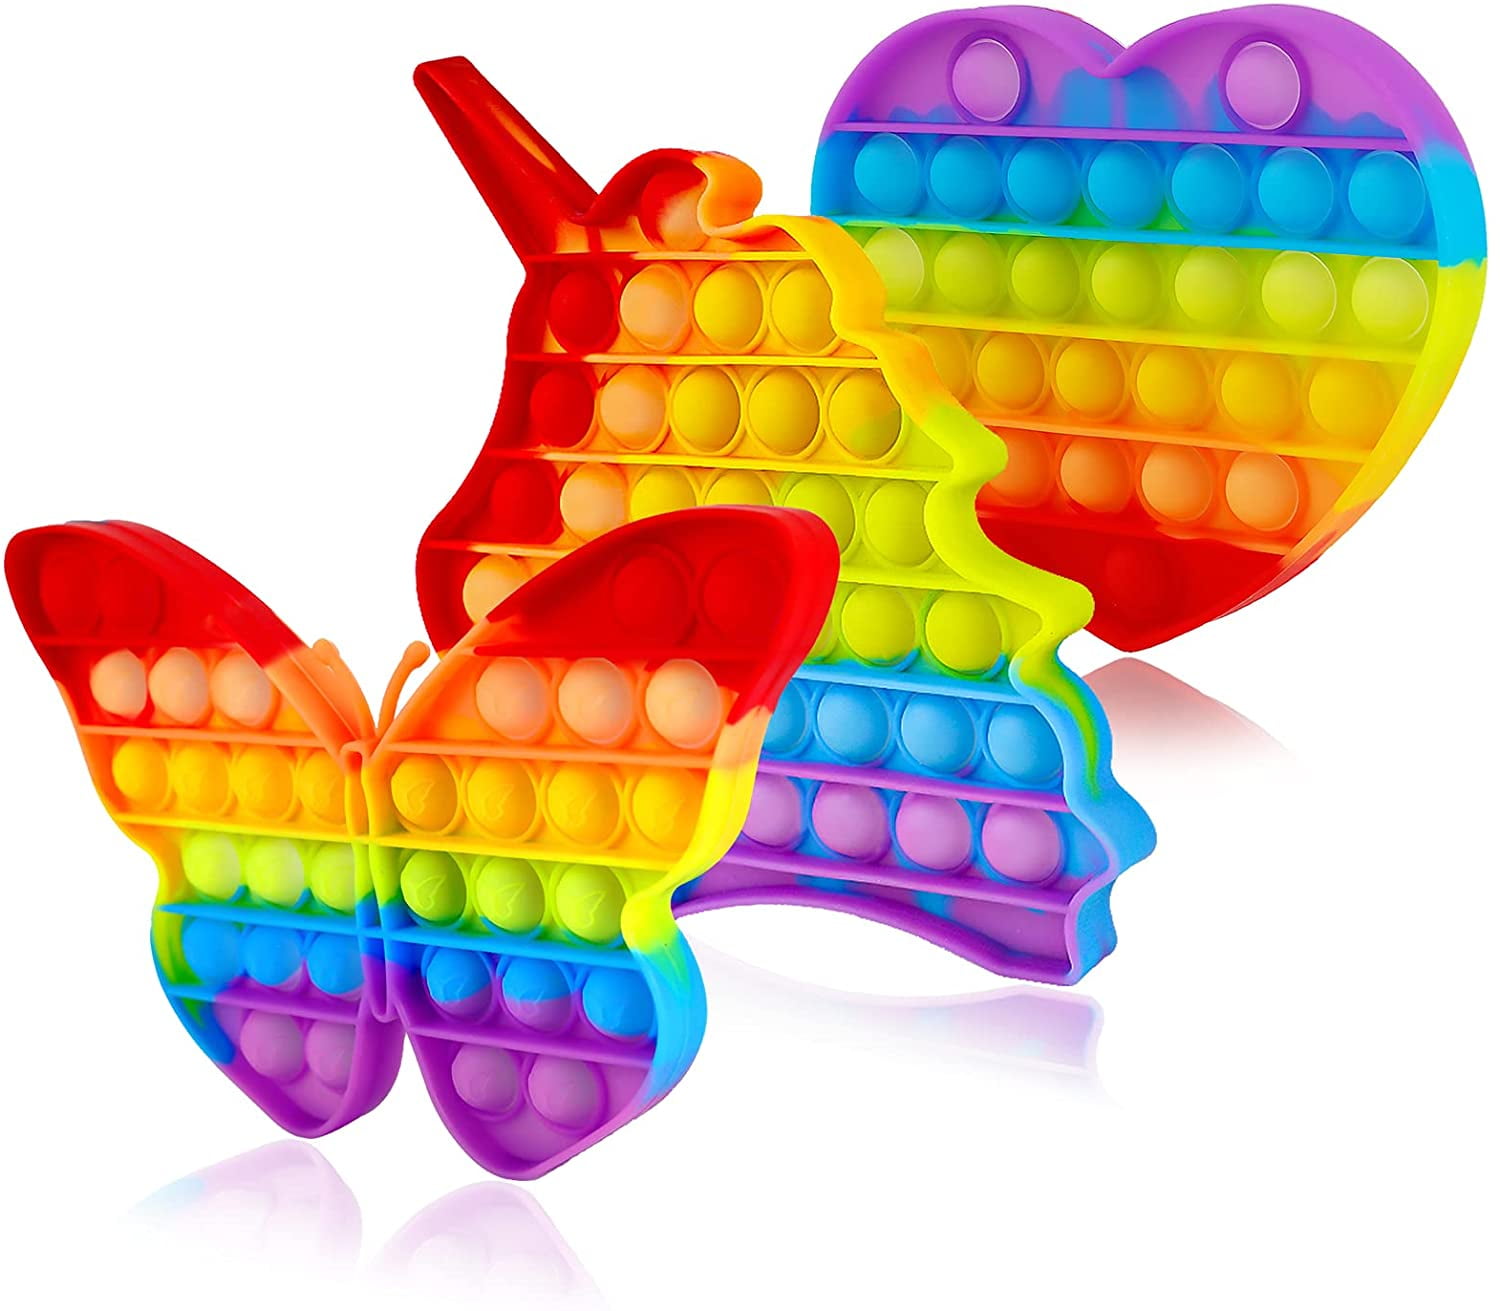 Details about   Pop It Fidget Toy Sensory Stress Relief Push Pop Rainbow Bubble Game Gift 2021 